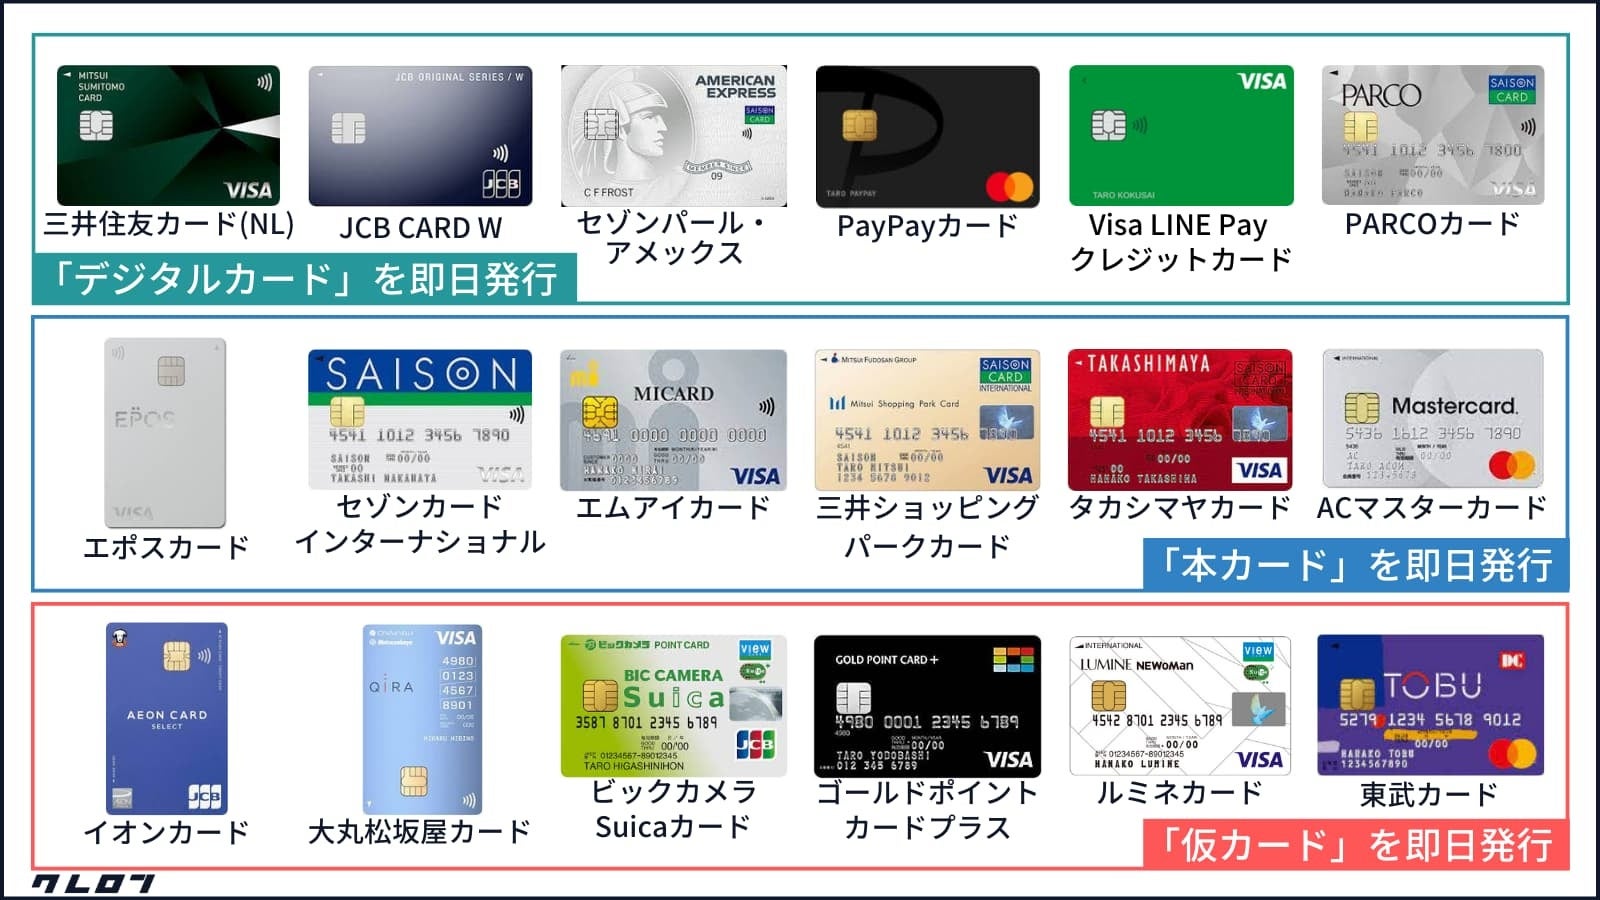 「クレジットカード即日発行に関するカオスマップ」を金融メディア「クレロン」にて公開しました